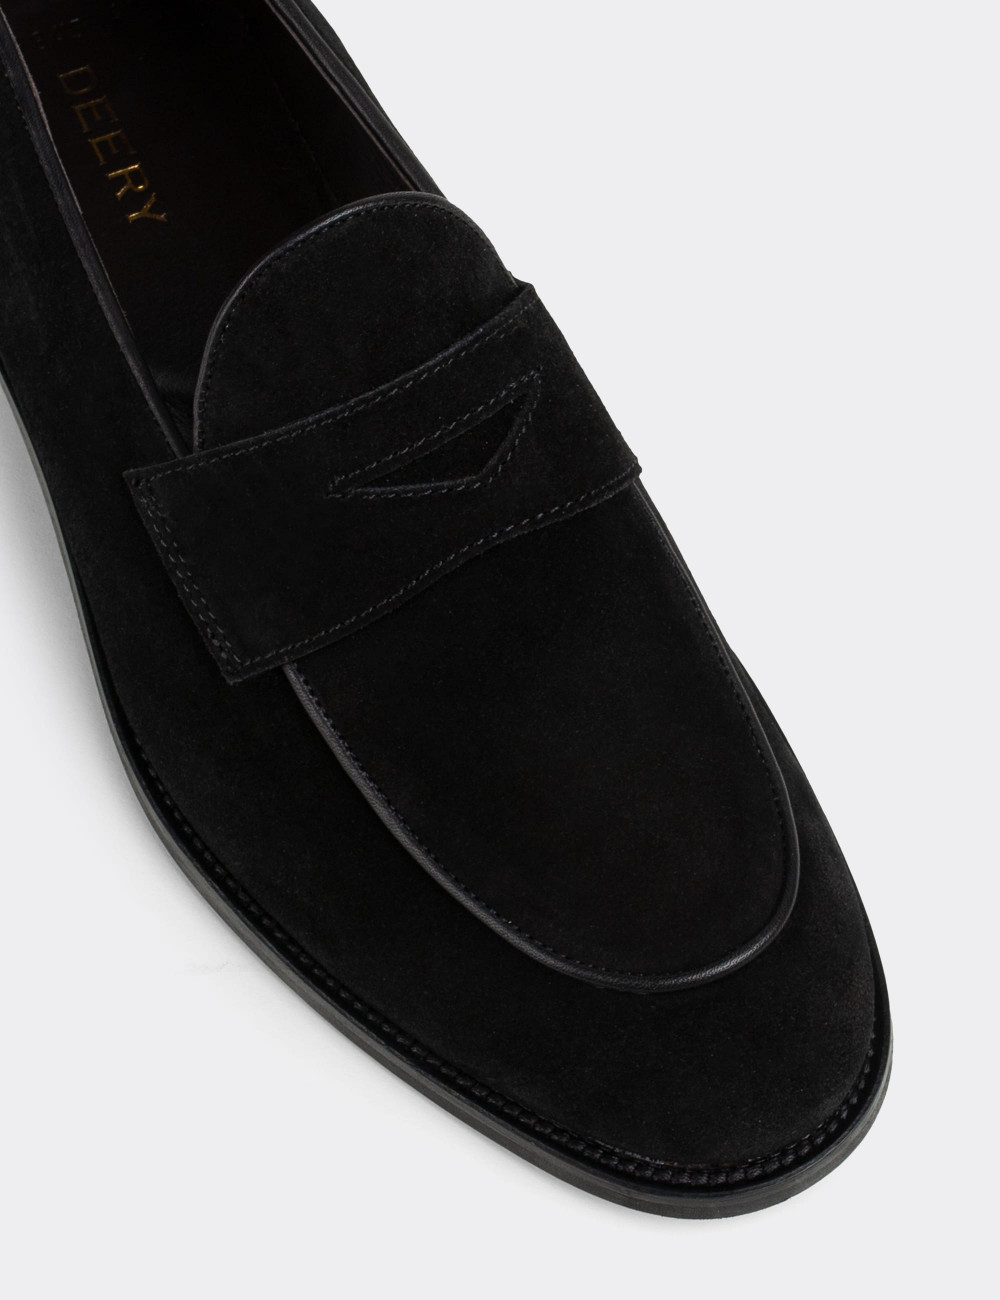 Hakiki Süet Siyah Loafer Erkek Ayakkabı - 01845MSYHN02